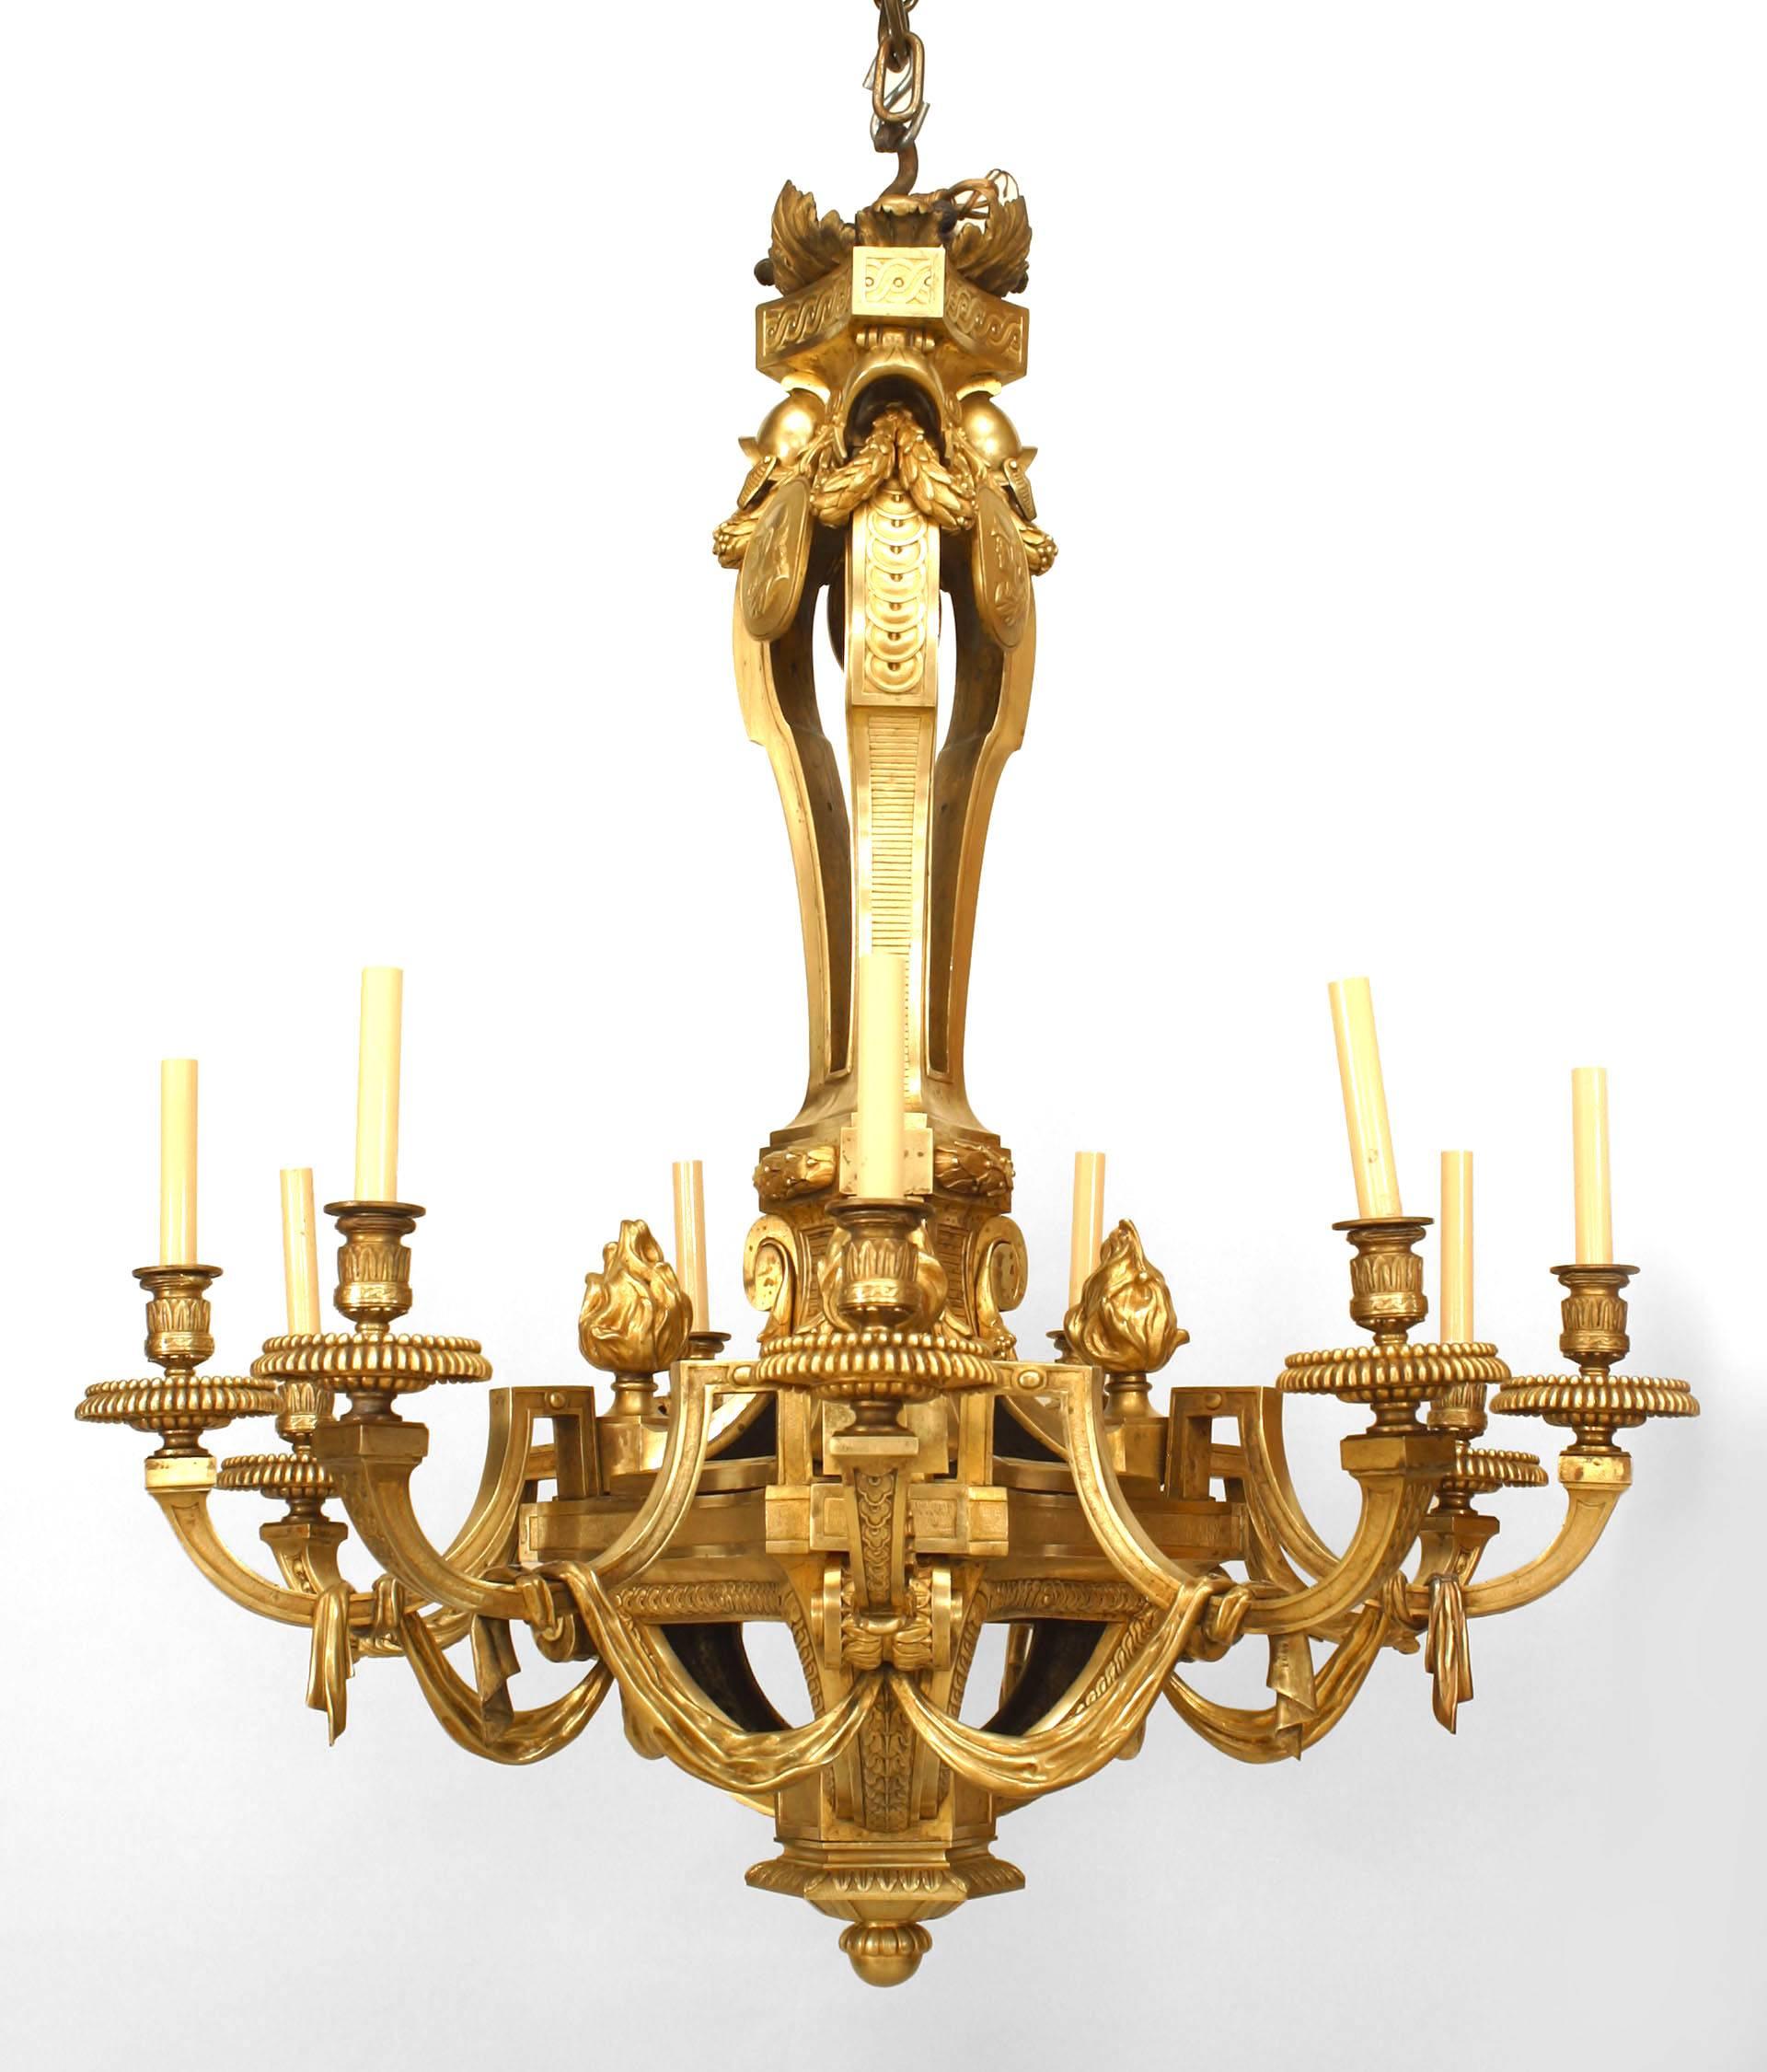 Lustre français de style Louis XVI (19e siècle) en bronze doré à 12 bras, avec un design en forme de houppe et de flamme.
